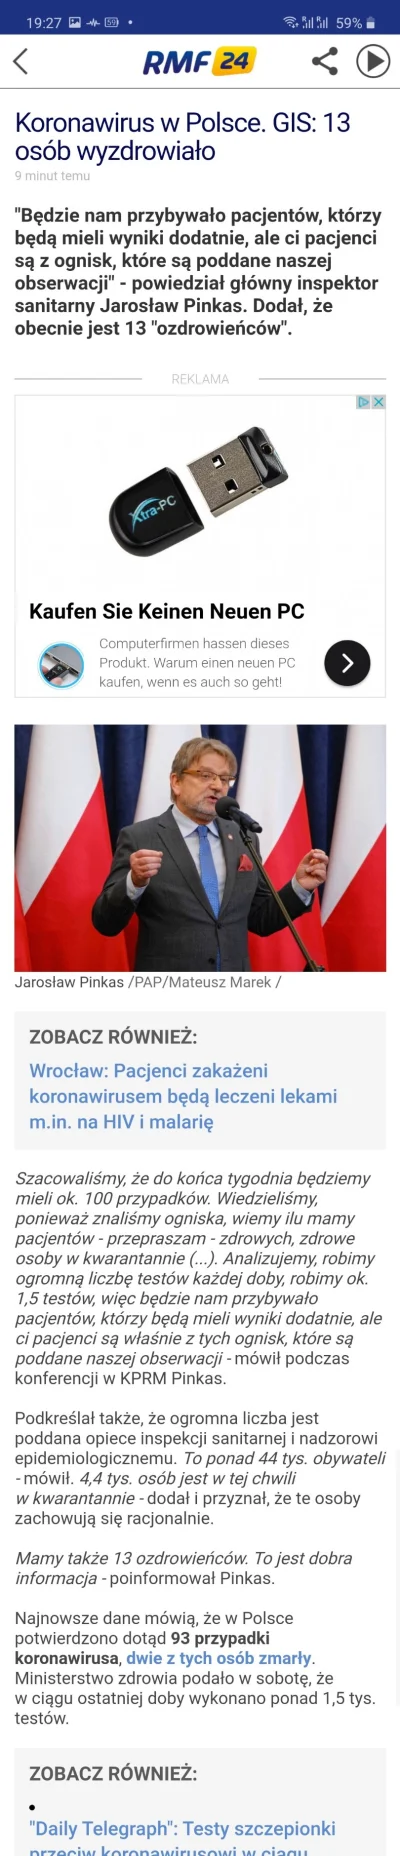 lubie_piwo - Trzynastu Polaków wygrało z koronawirusem!

#koronawirus #2019ncov